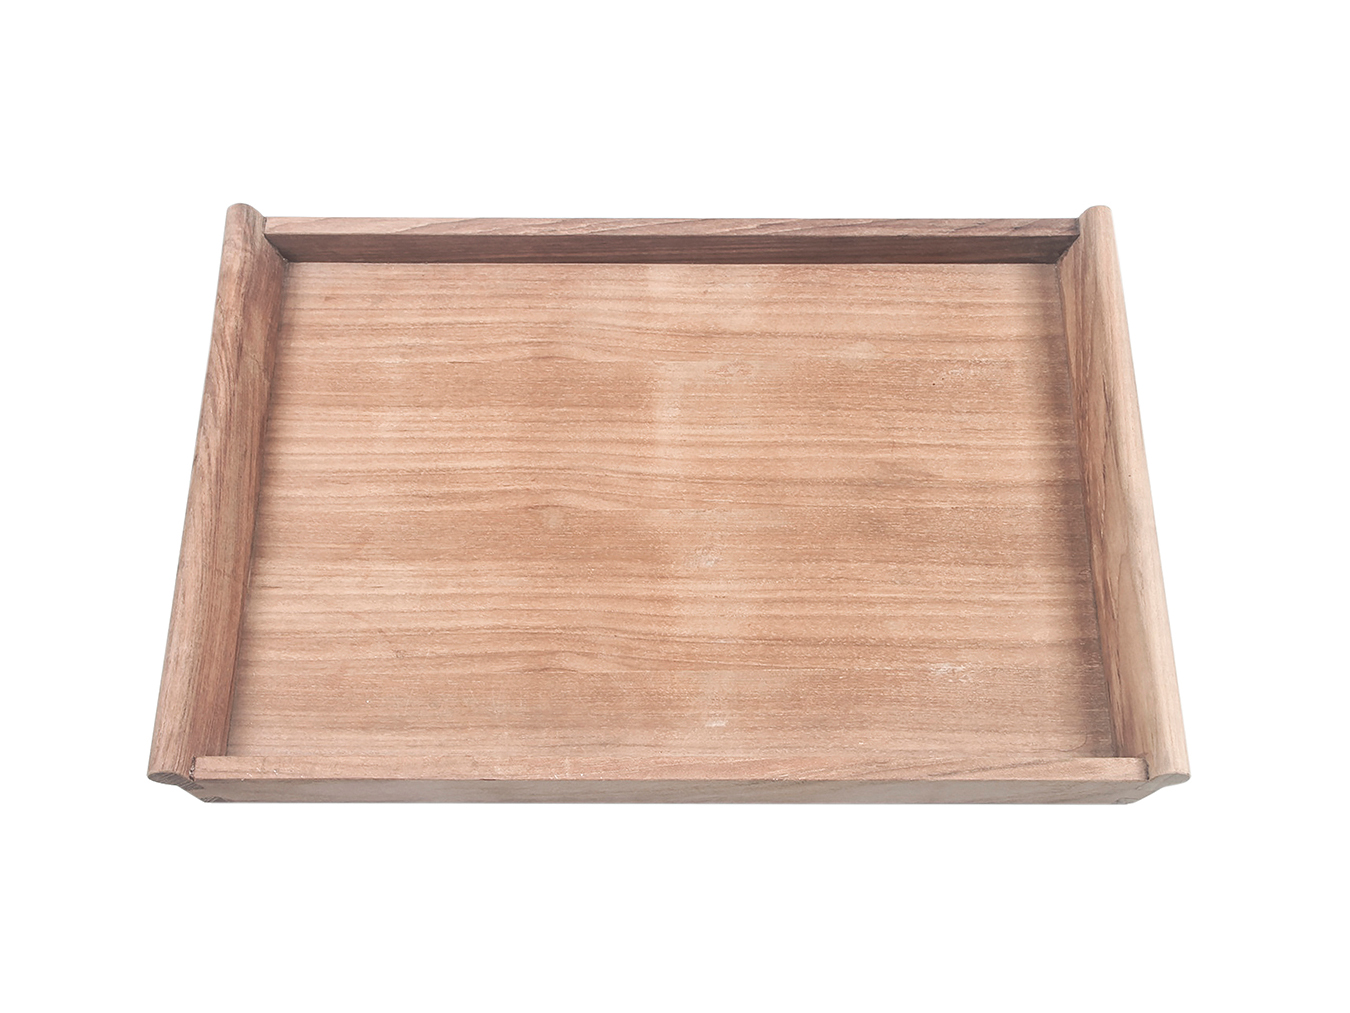 Tabletttisch klappbar SERVING TRAY WITH TRAY STAND von Traditional Teak |  HolzDesignPur